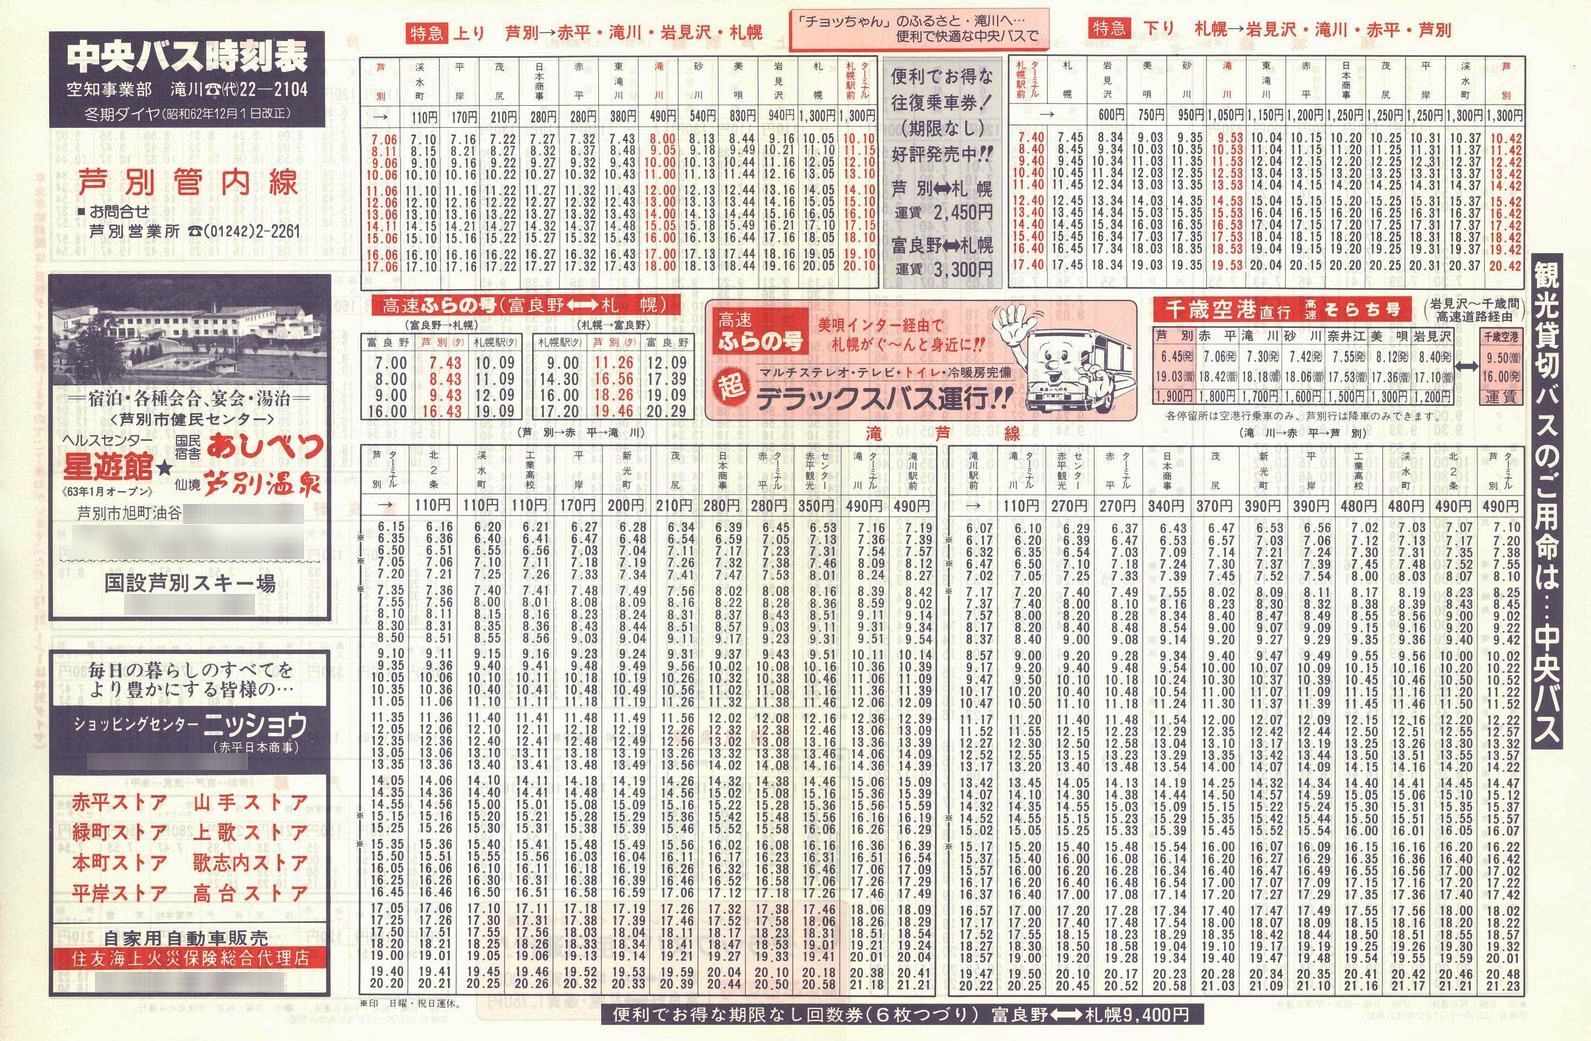 1987-12-01改正_北海道中央バス(空知)_芦別管内線時刻表表面